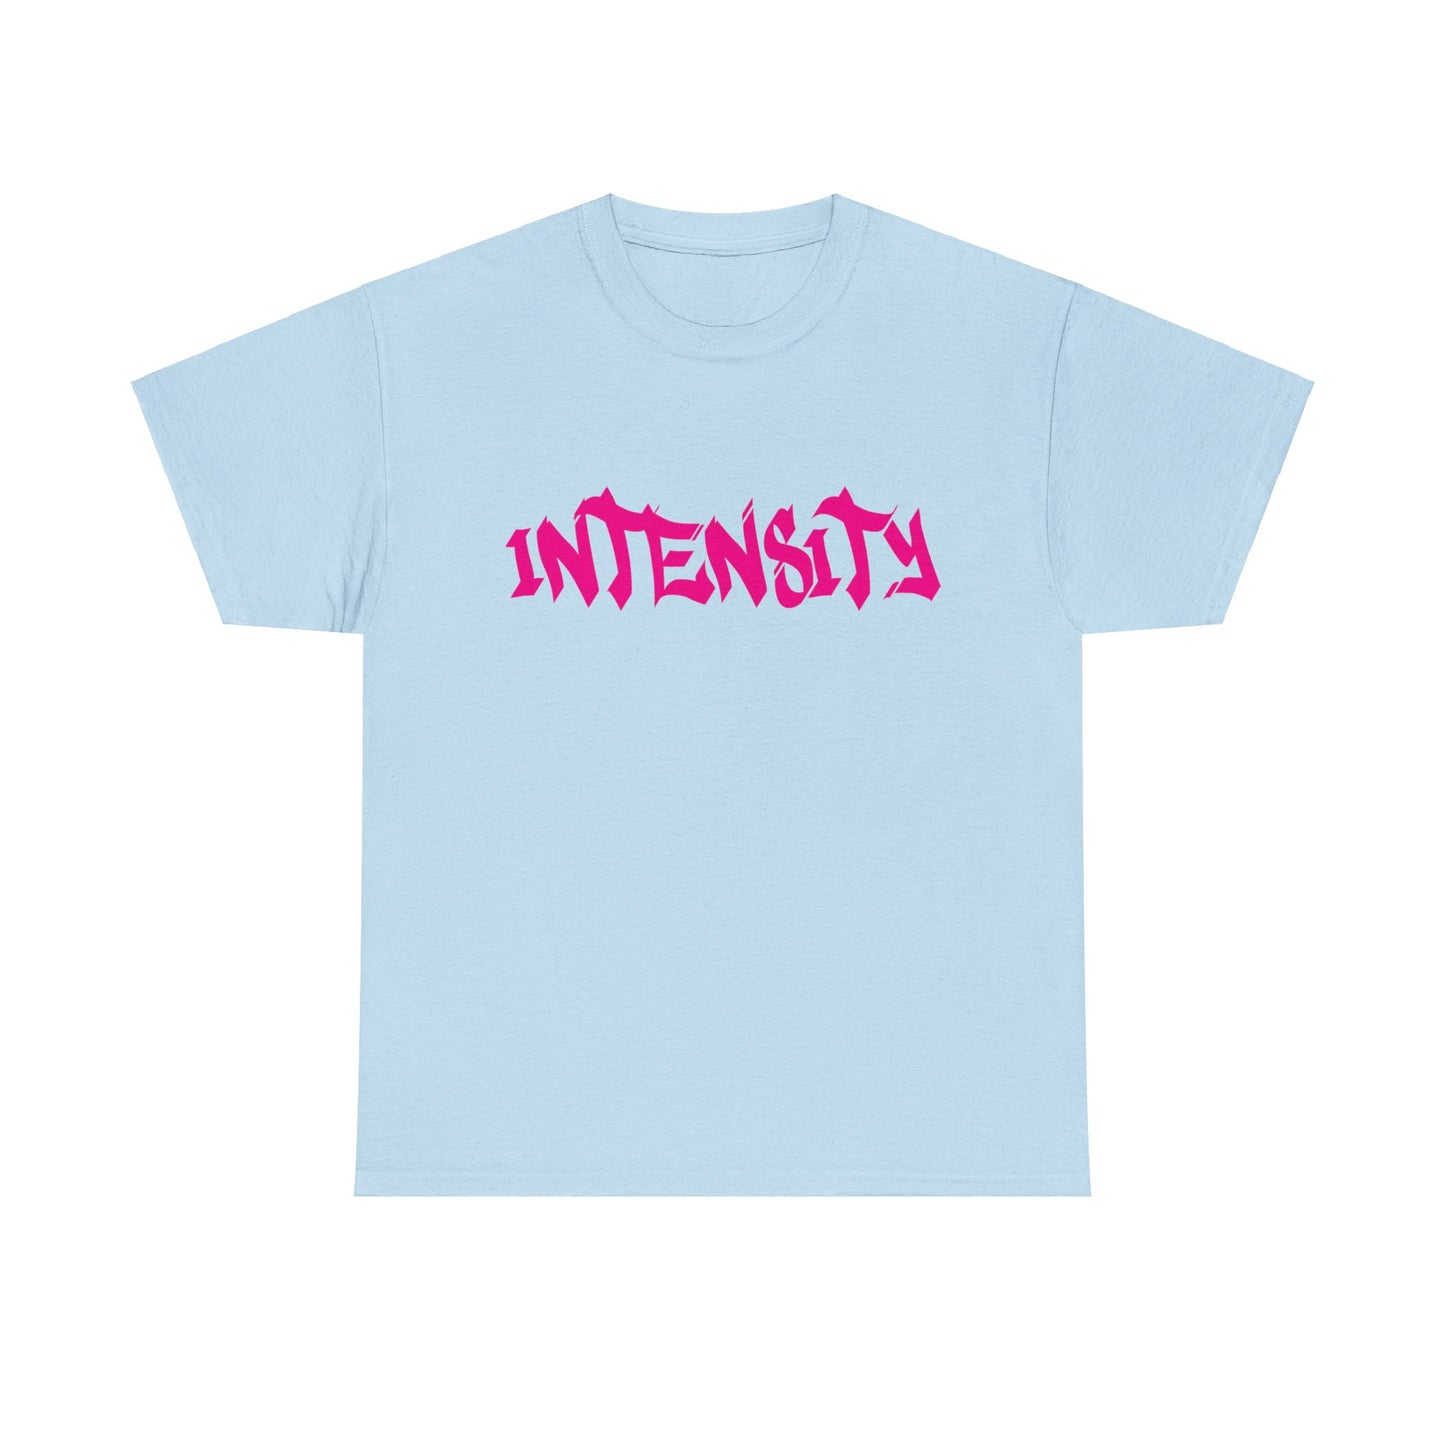 Men's "INTENSITY" T-Shirt (Hot Pink)